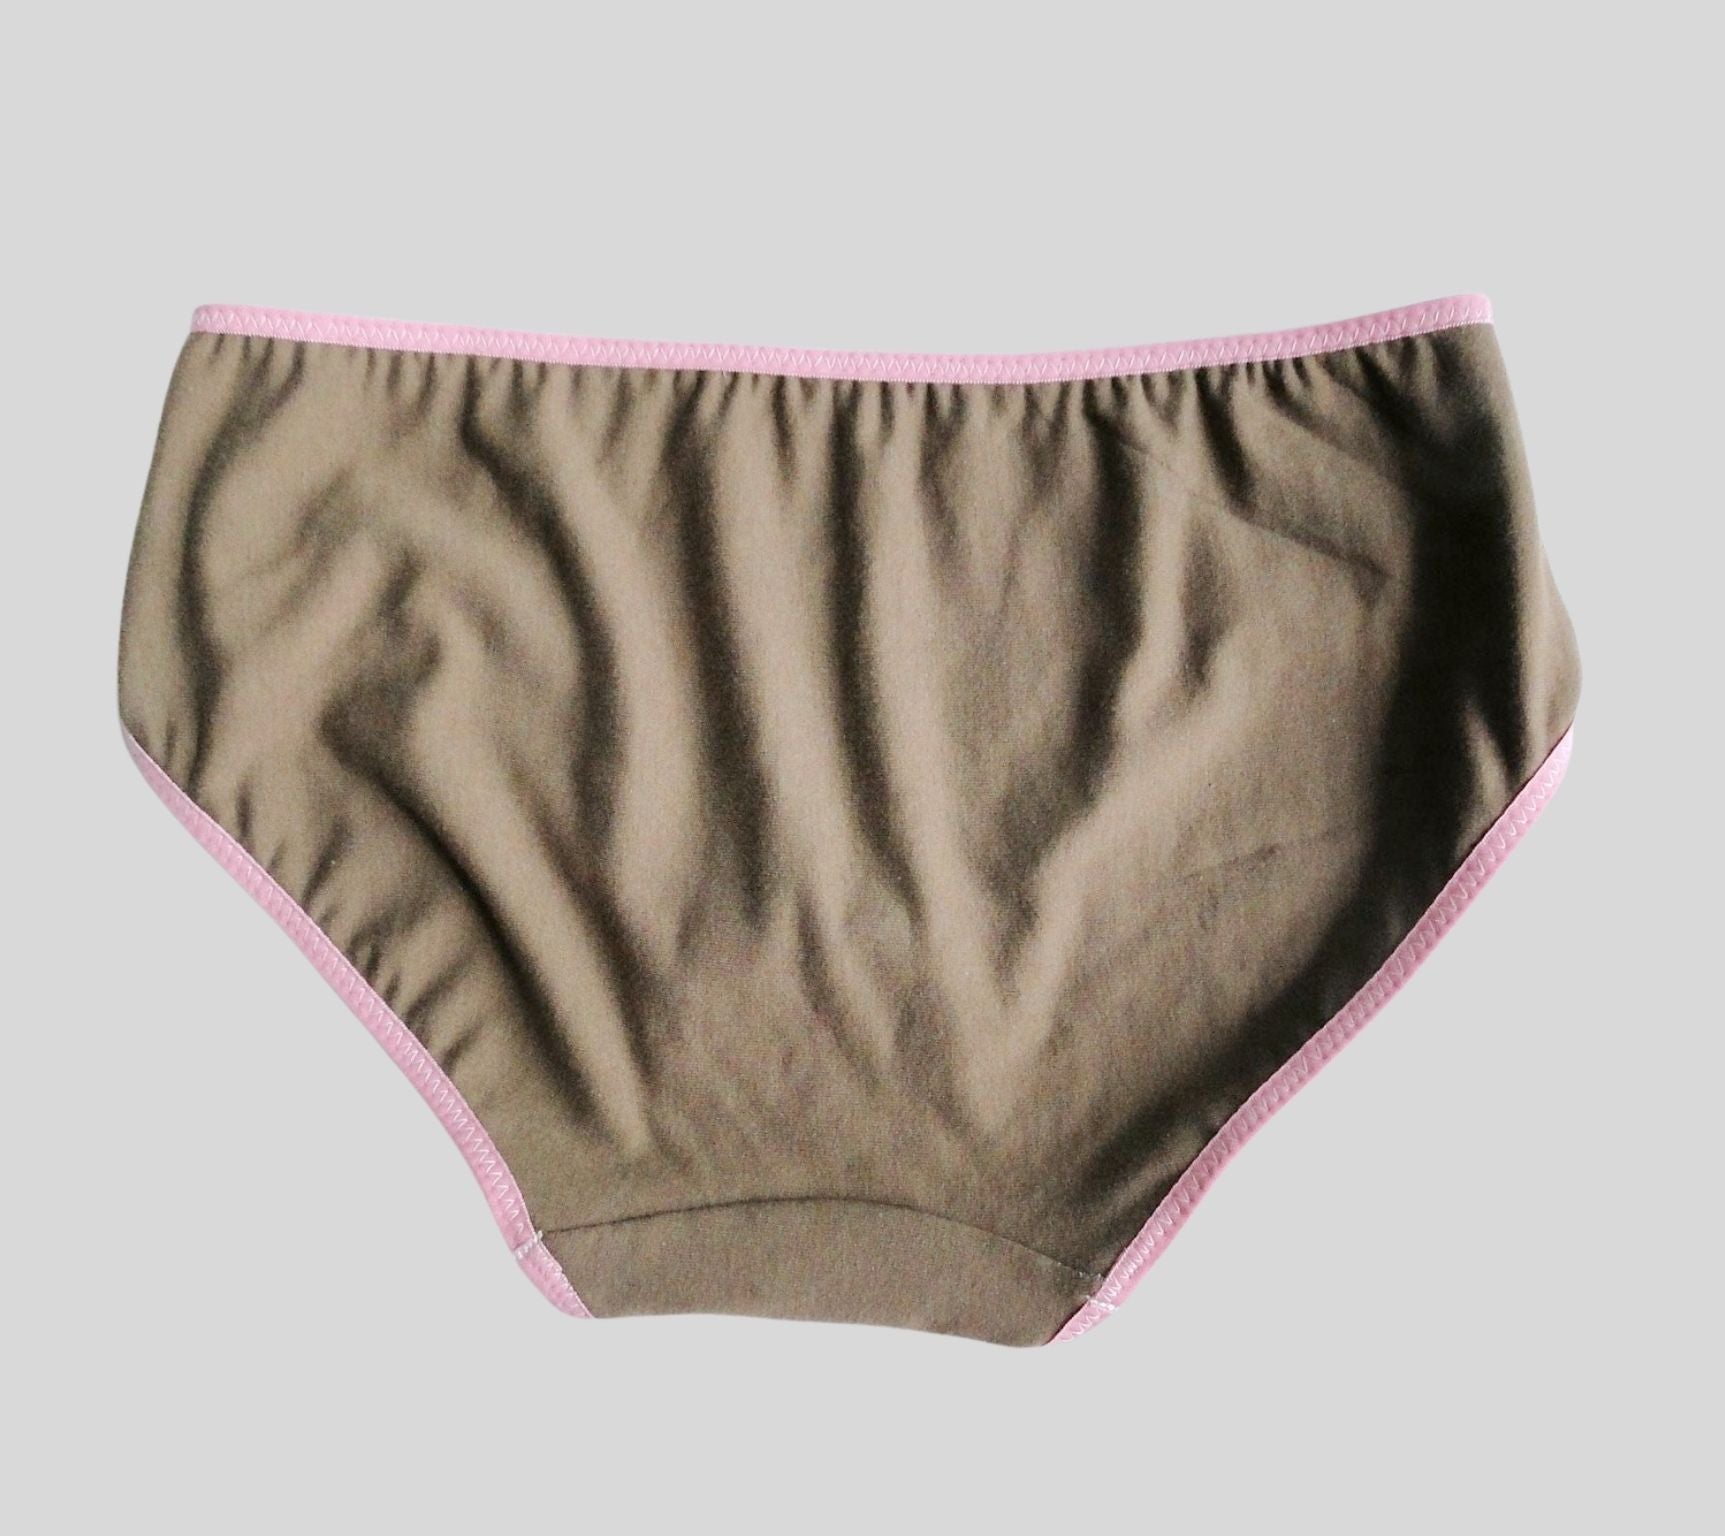 Cotton Underwear Underwear, Lace Underwear Underwear